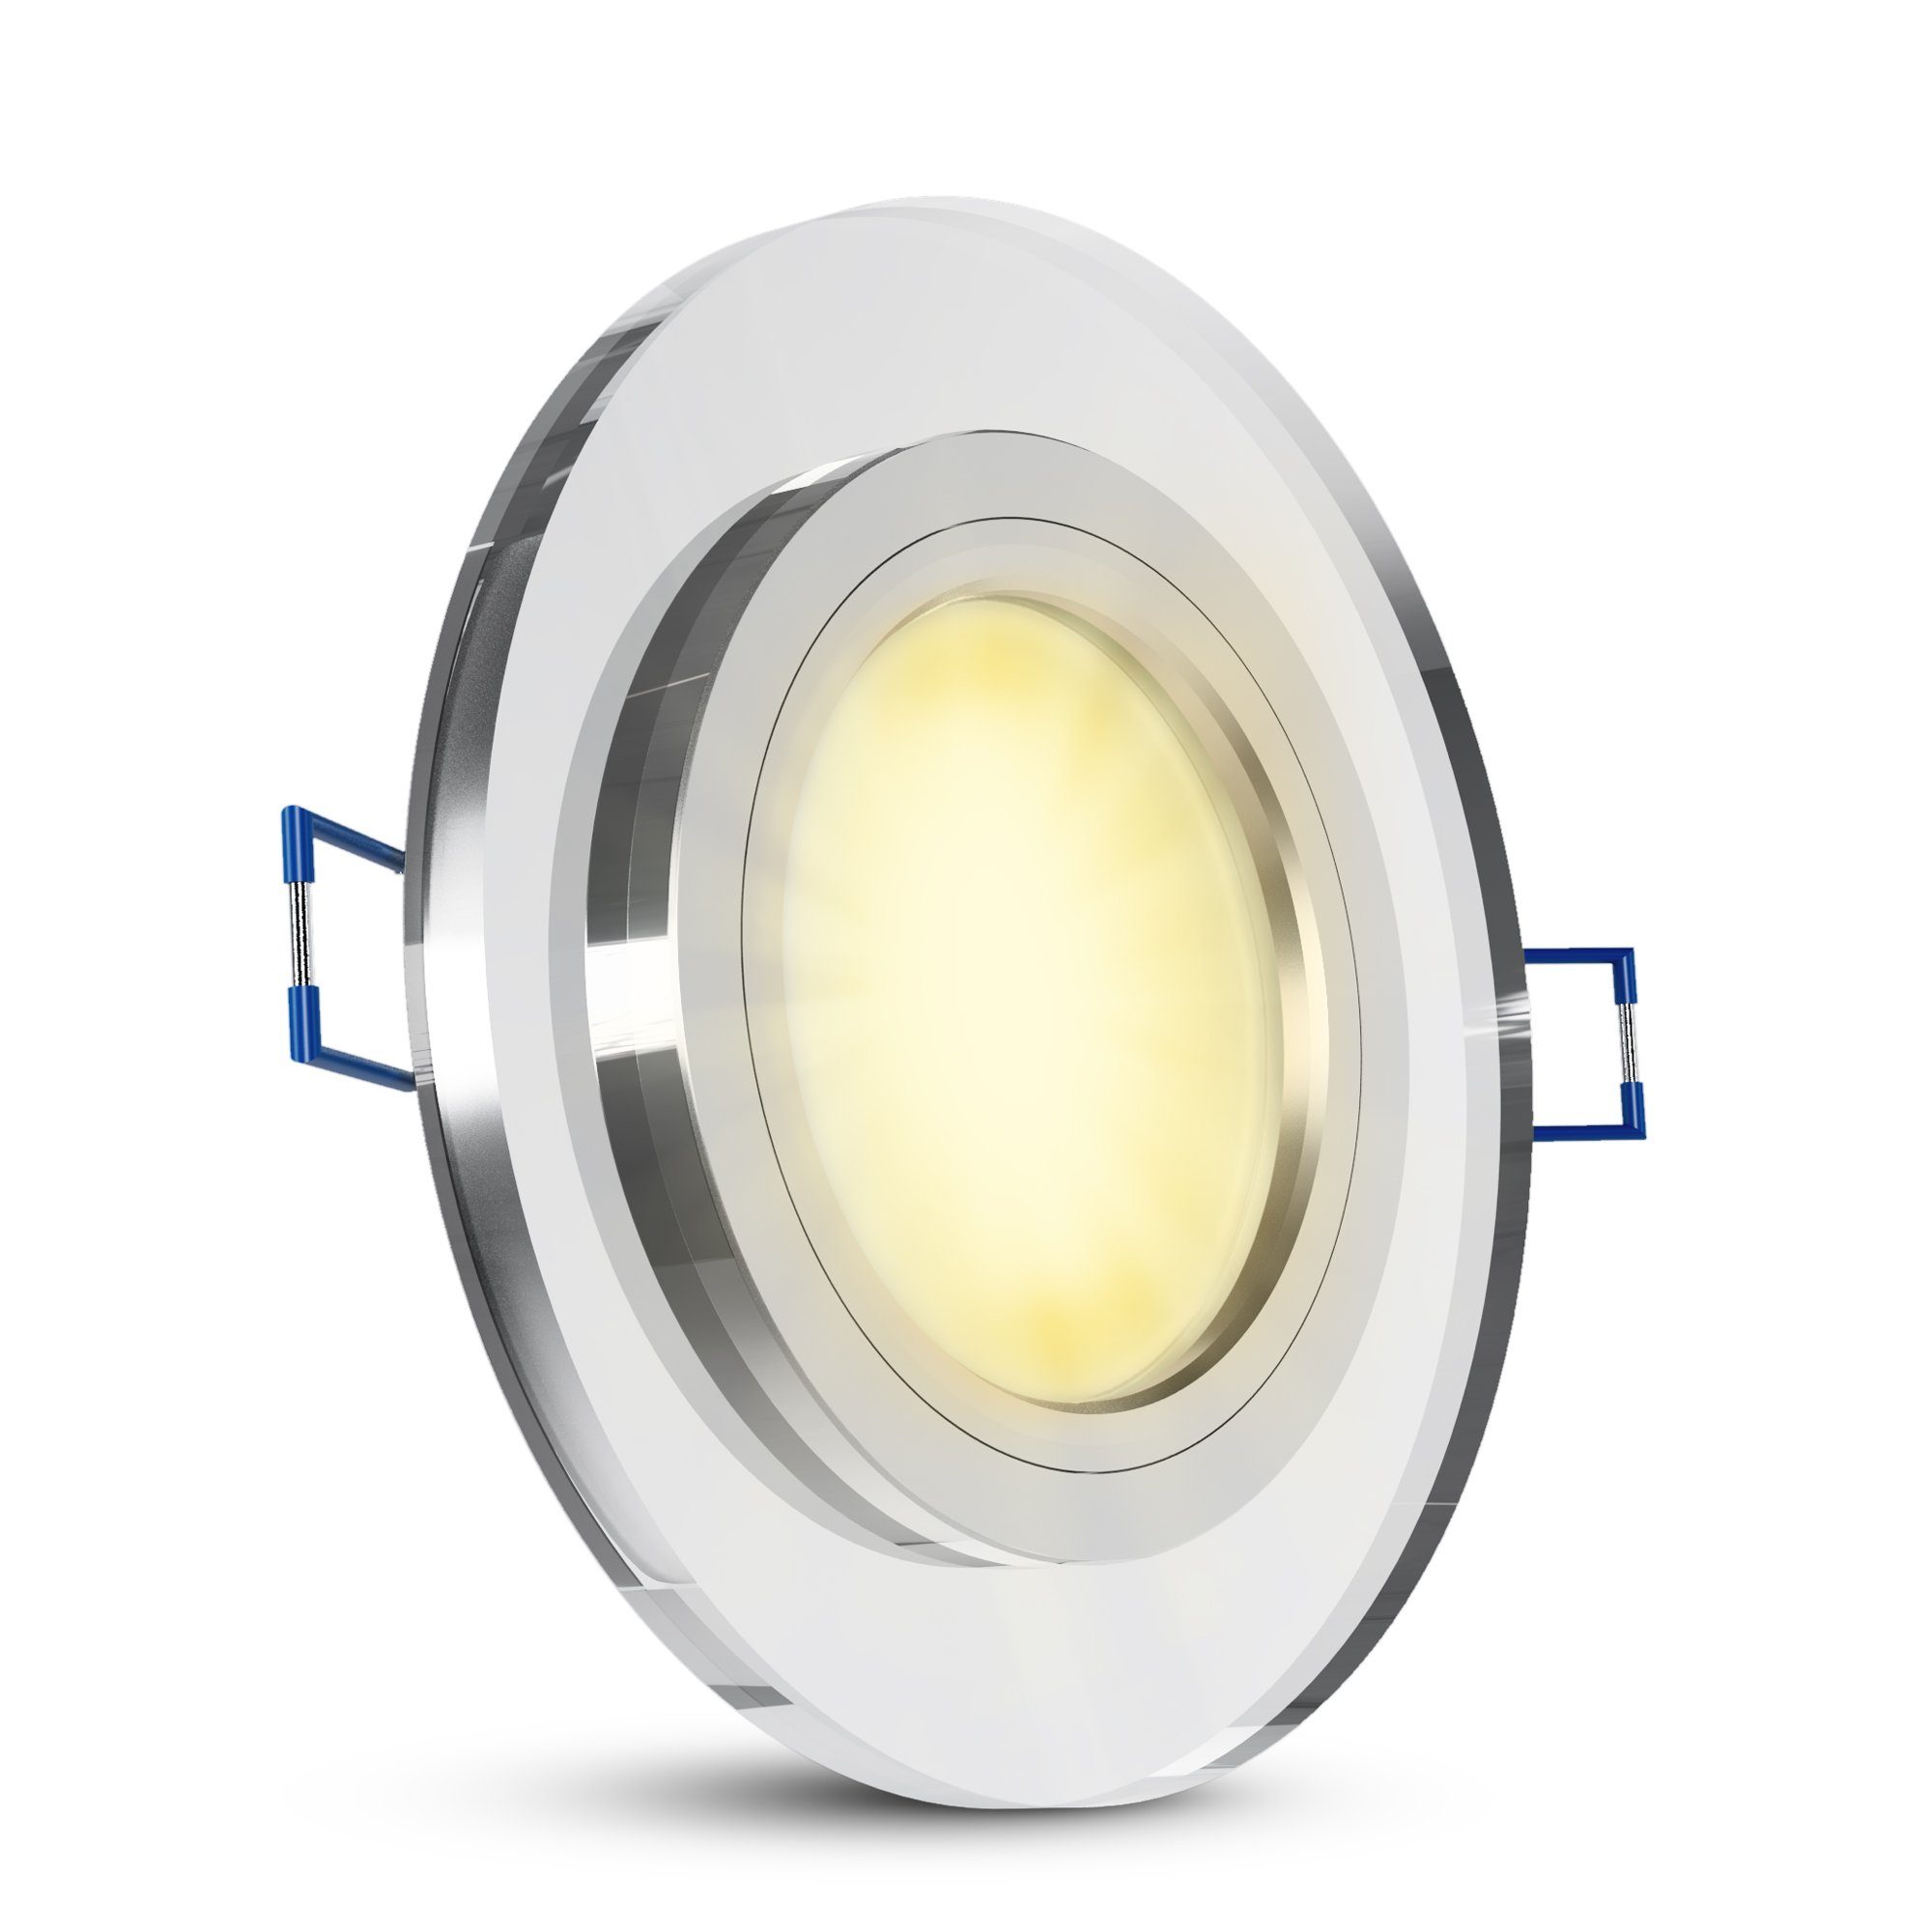 SSC-LUXon LED Flache dimmbar LED-Modul, LED Einbauleuchte Glas Warmweiß mit klar rund Einbaustrahler